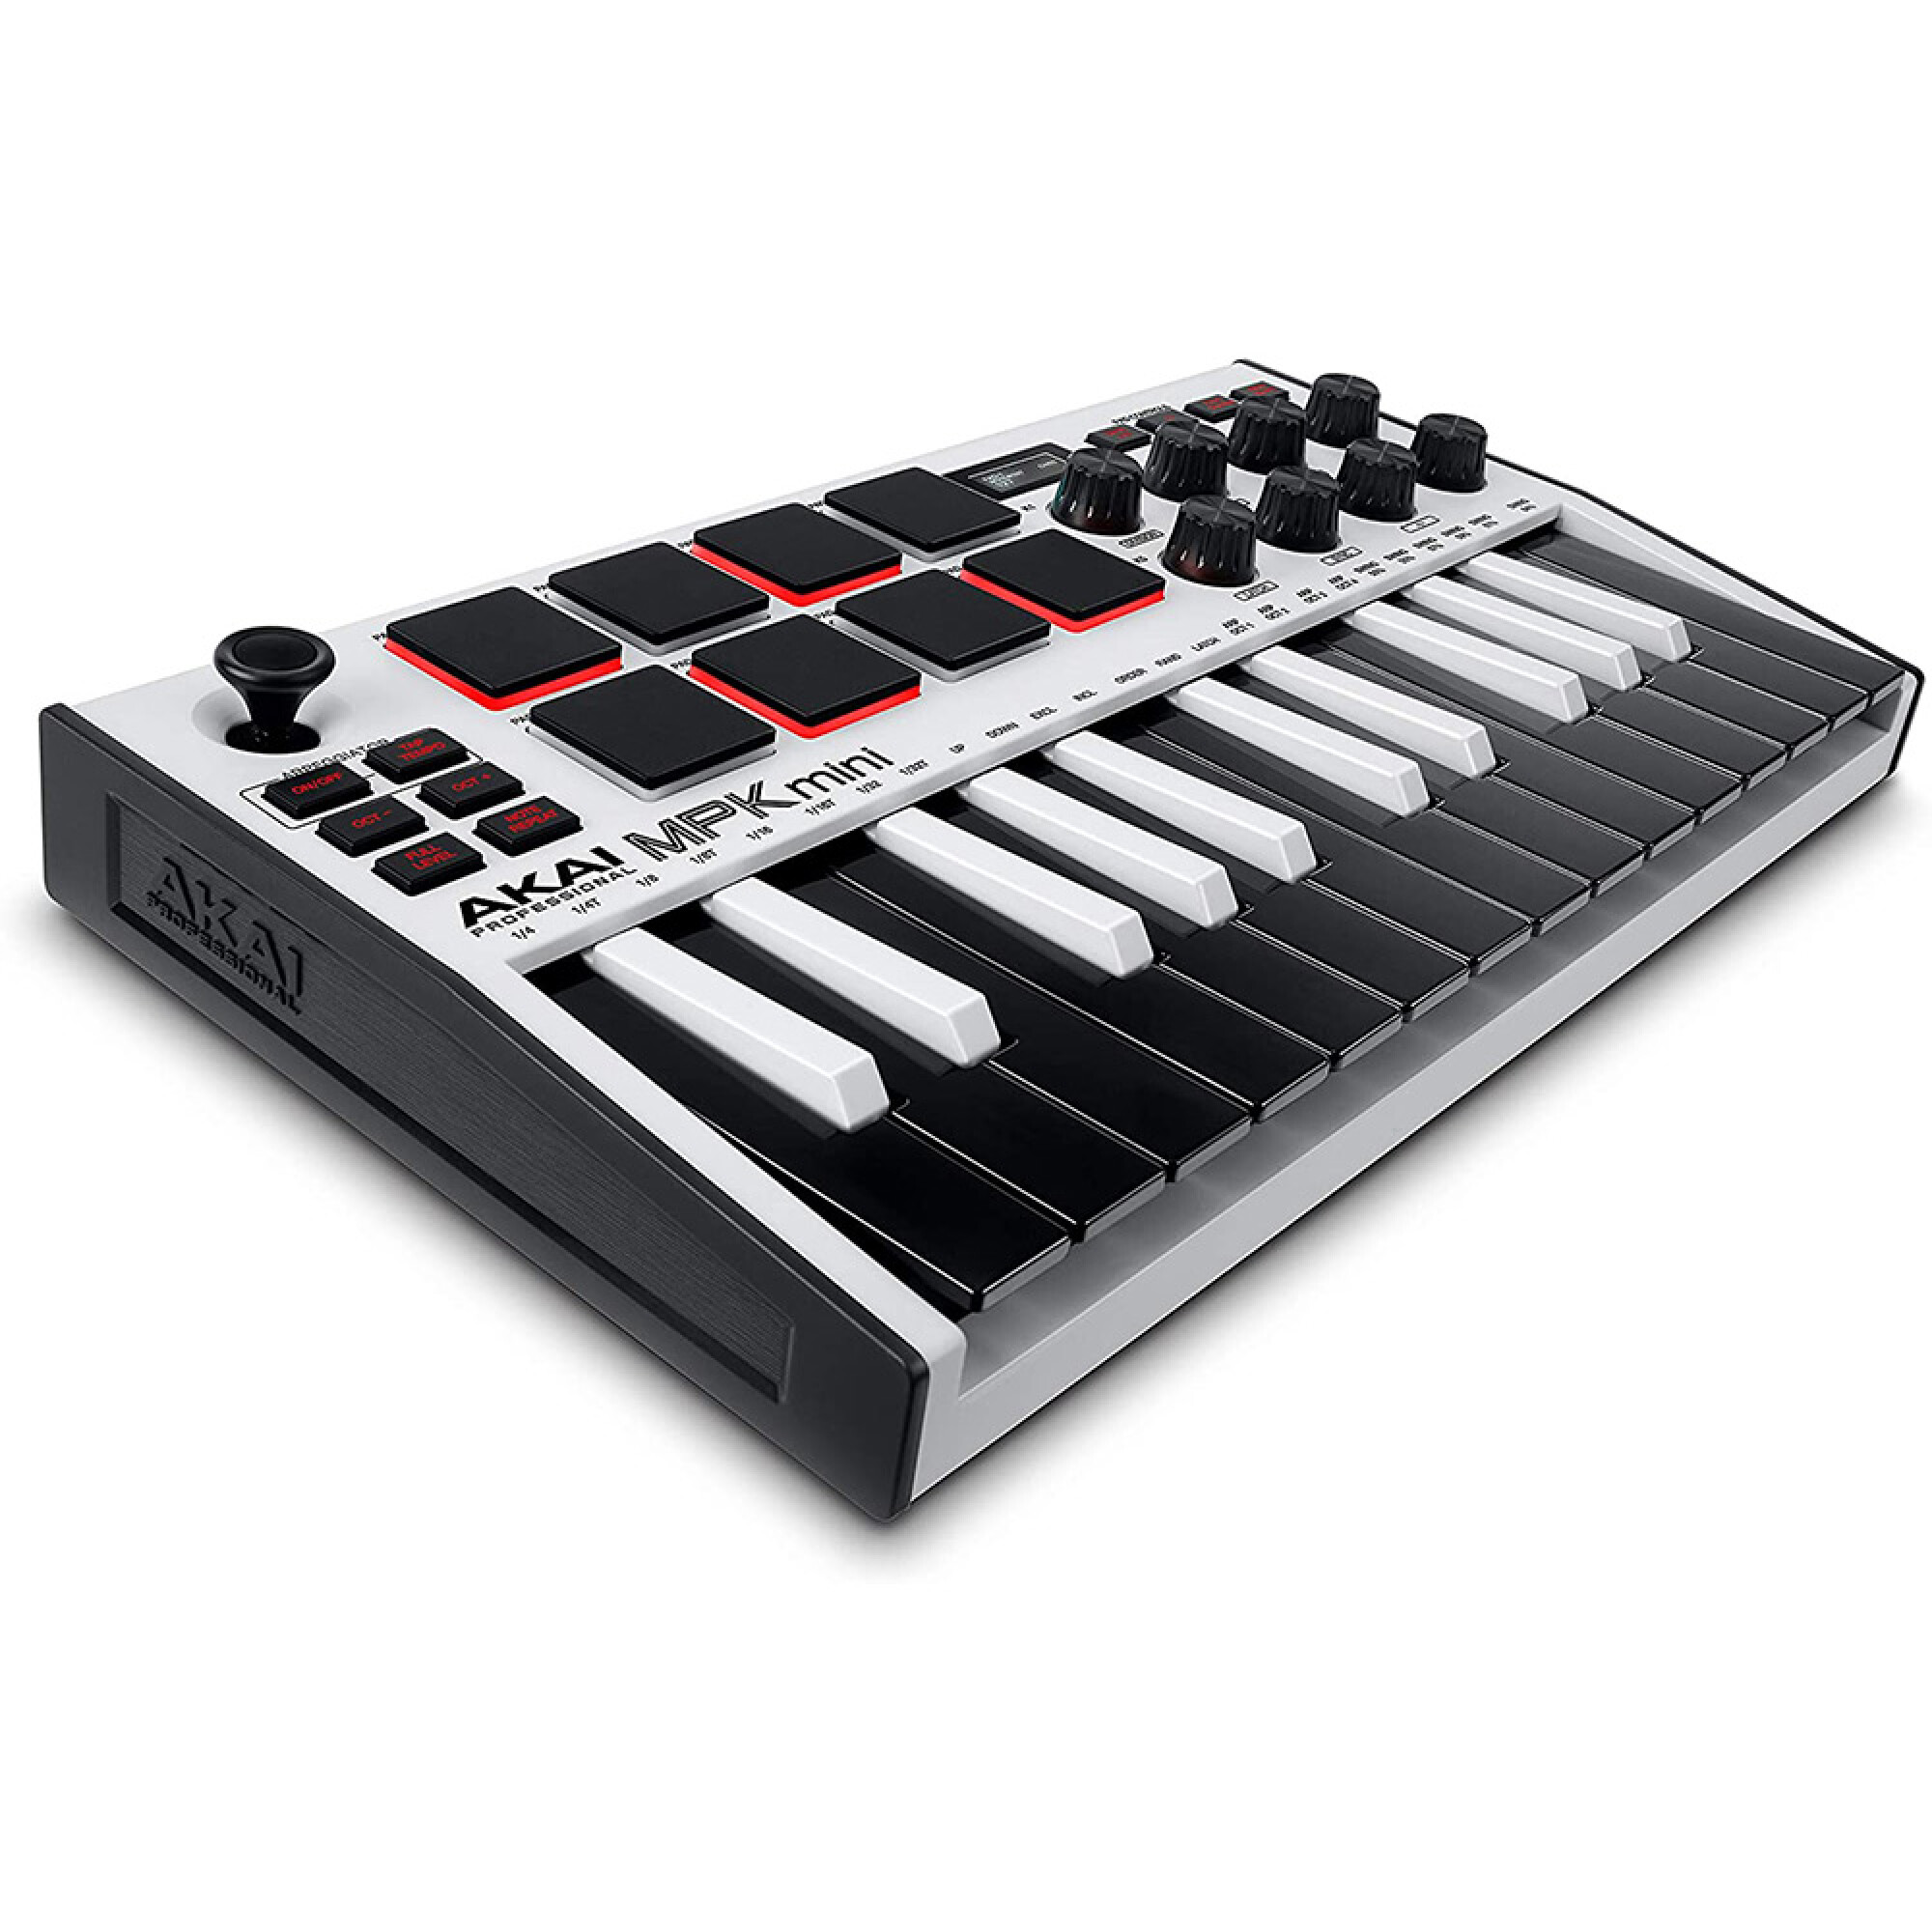 Qué es un controlador MIDI? - KUBO Proyecto Musical